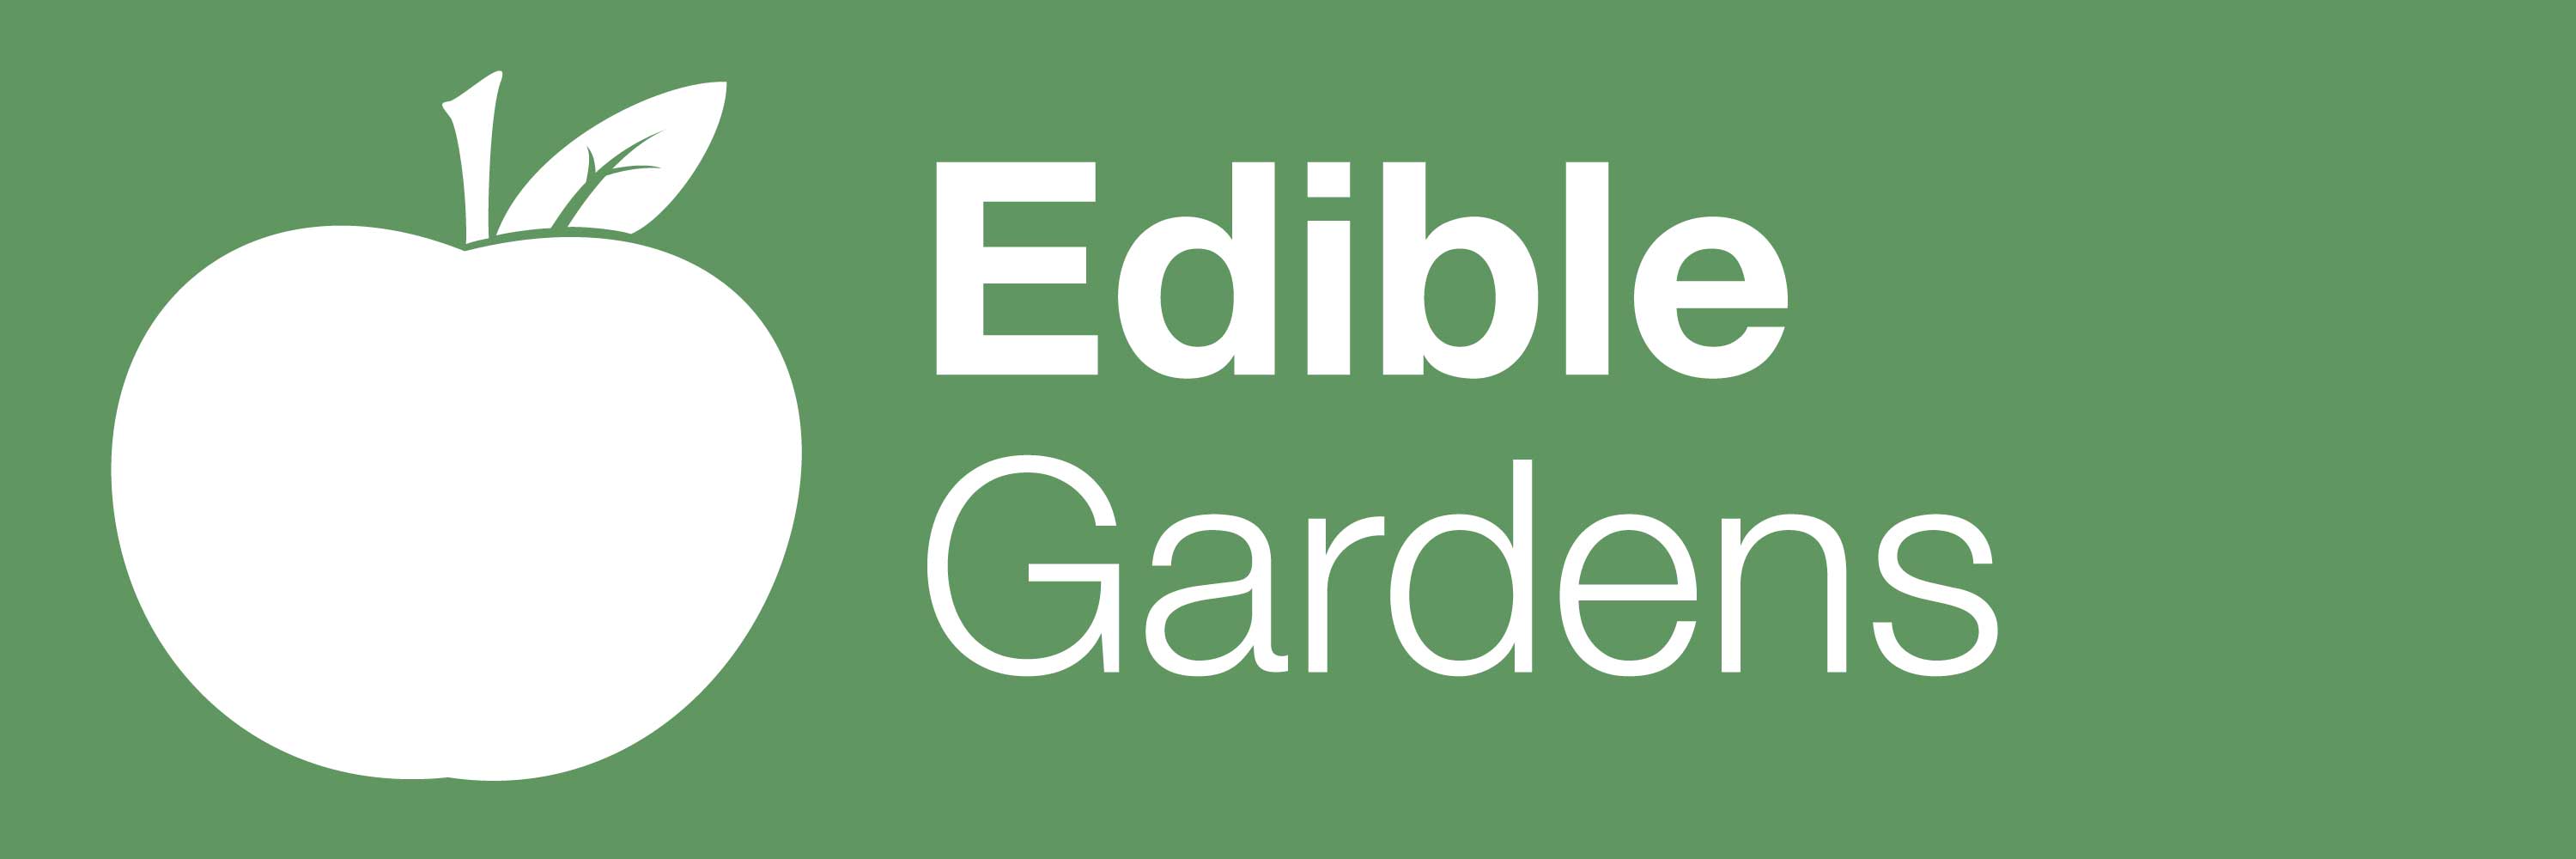 Edible Gardens Banner